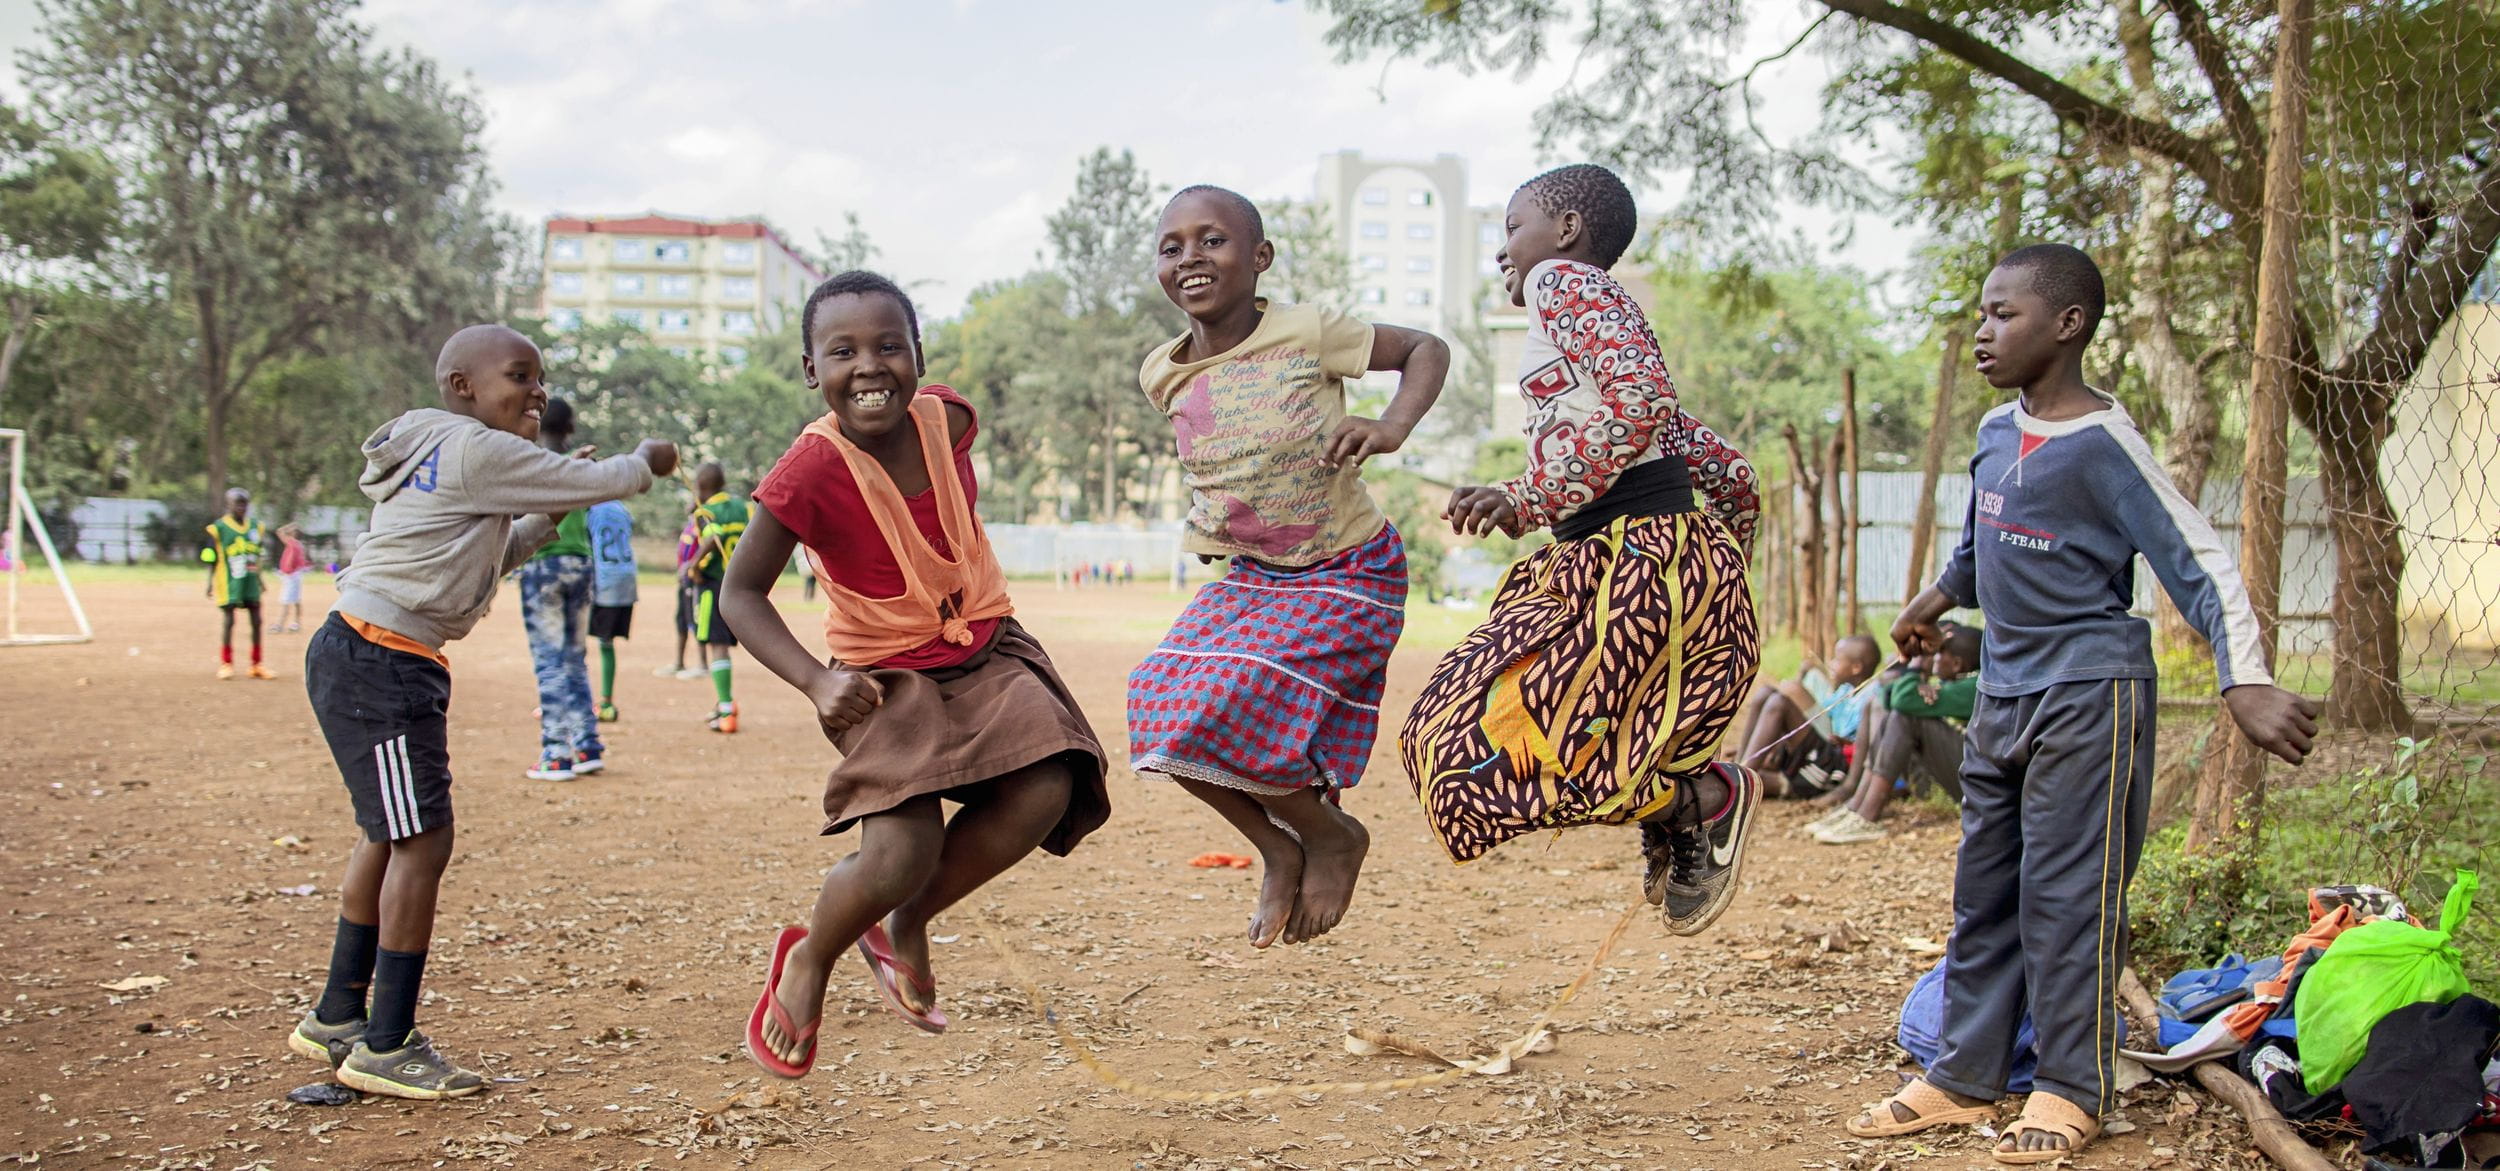 Kinder springen Seil in Nairobi, Kenia (Bild: Lars Heidrich)